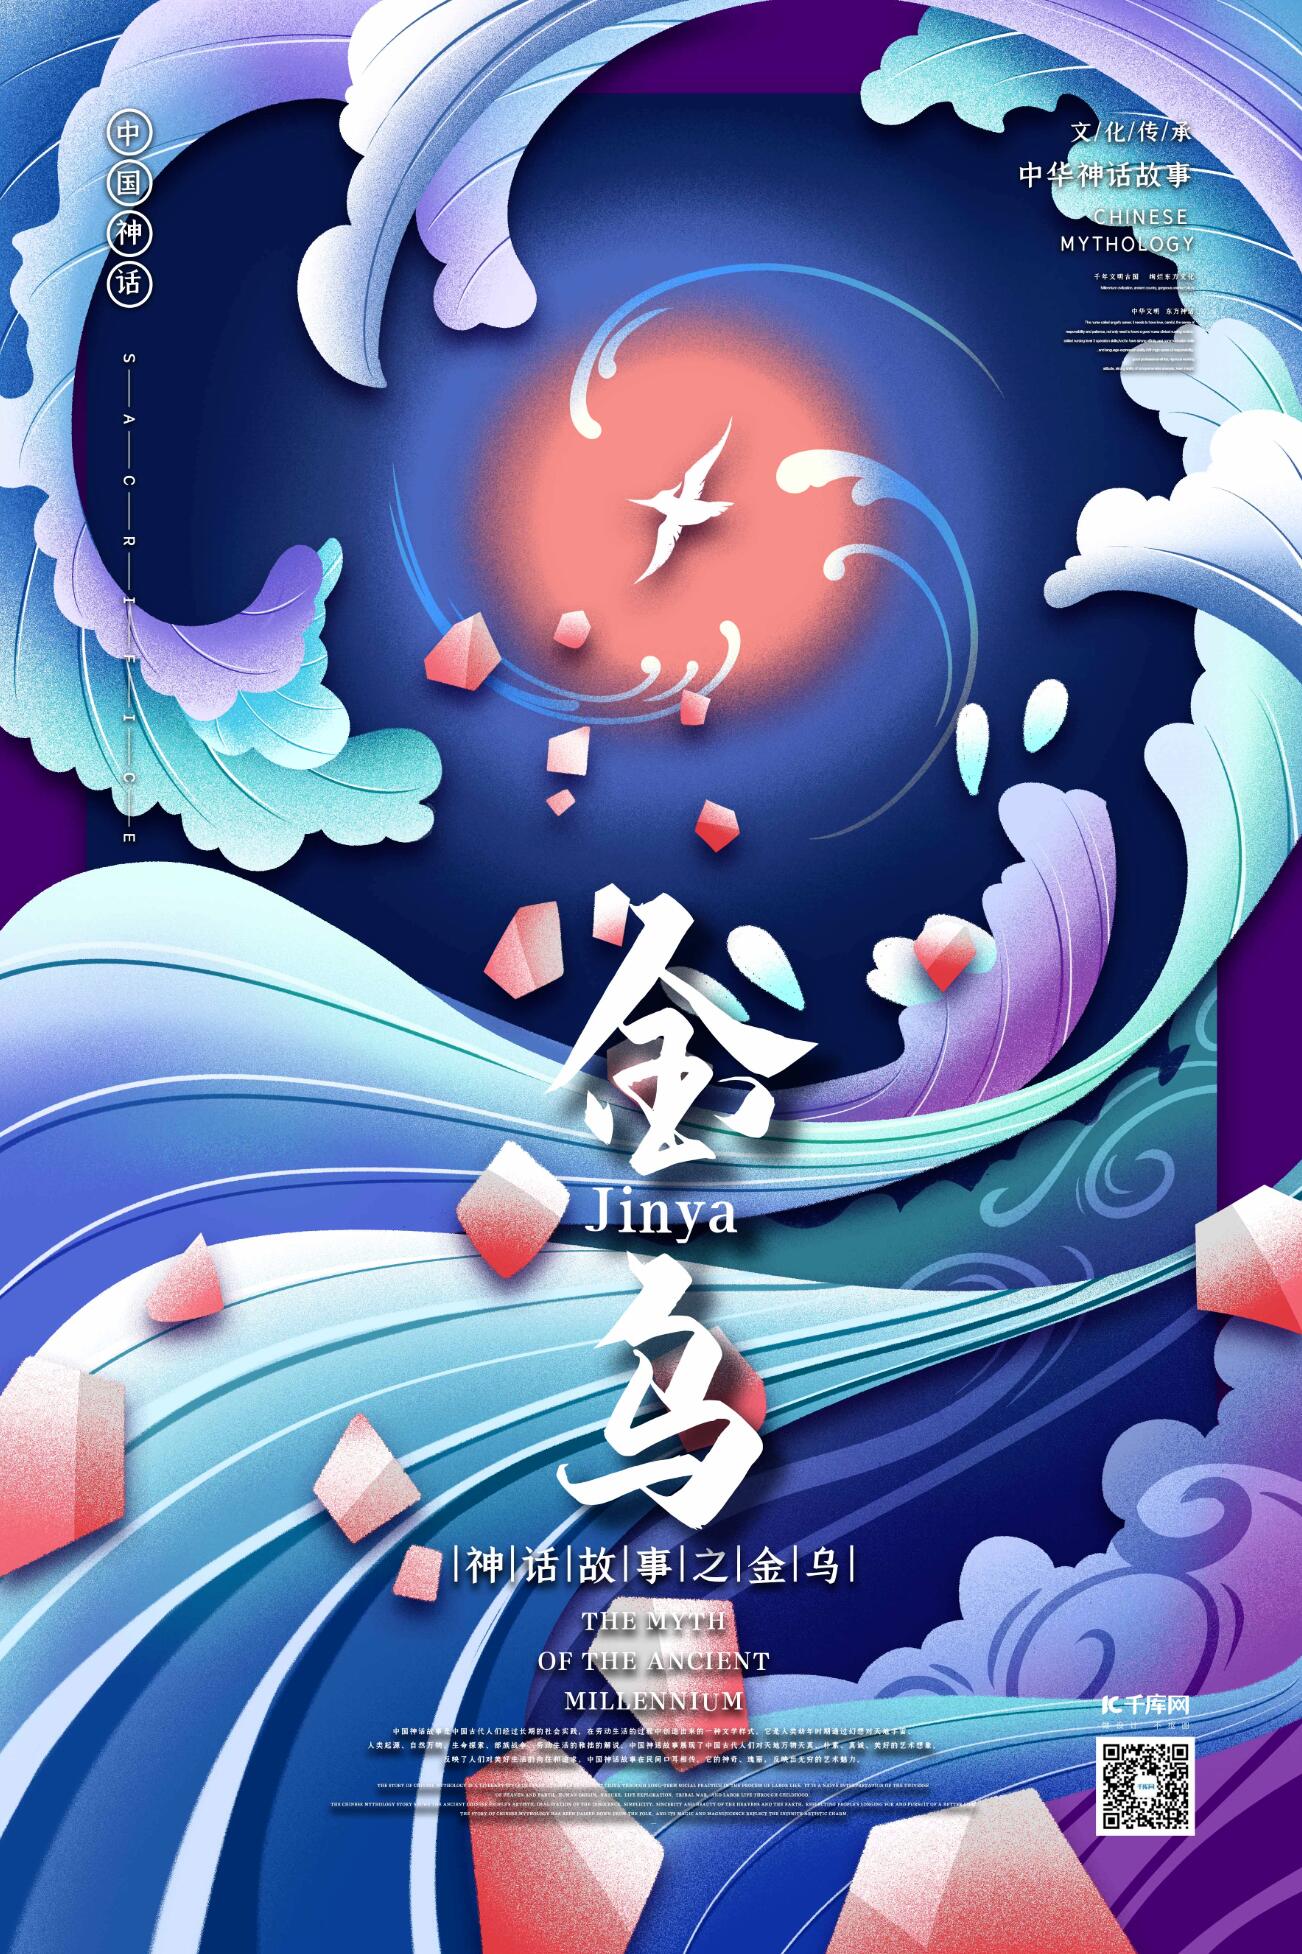 中国古代神话传说生物之金乌国潮风格插画海报图片